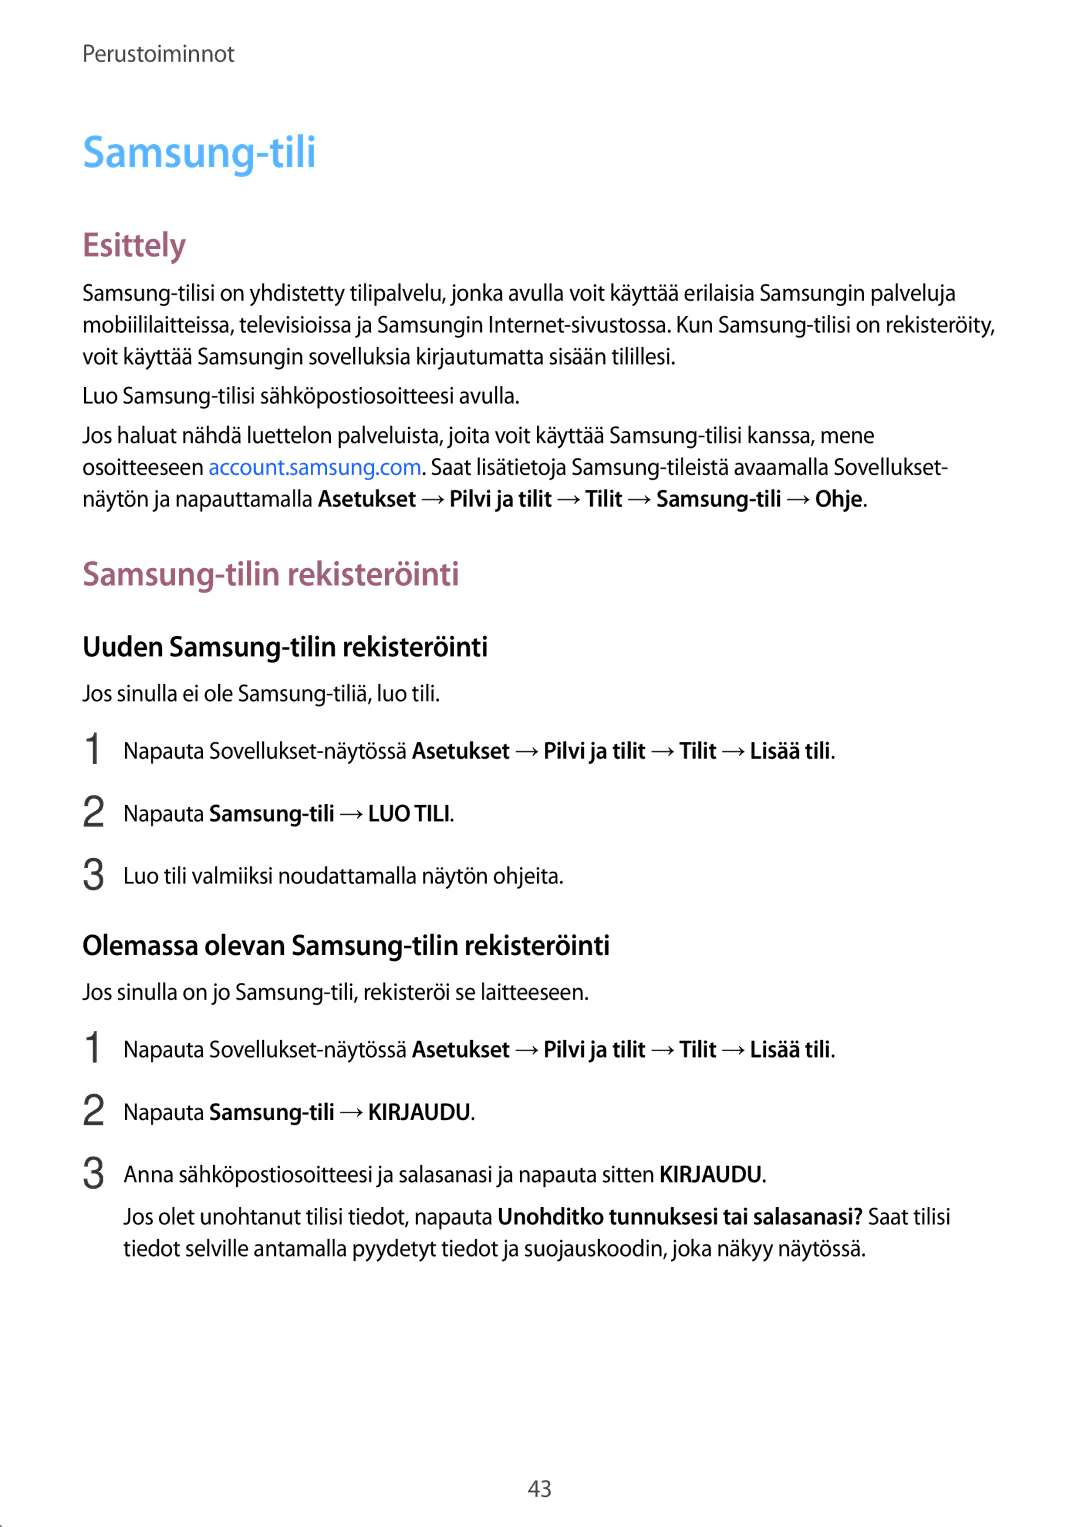 Samsung SM-J330FZKDNEE manual Uuden Samsung-tilin rekisteröinti, Olemassa olevan Samsung-tilin rekisteröinti 